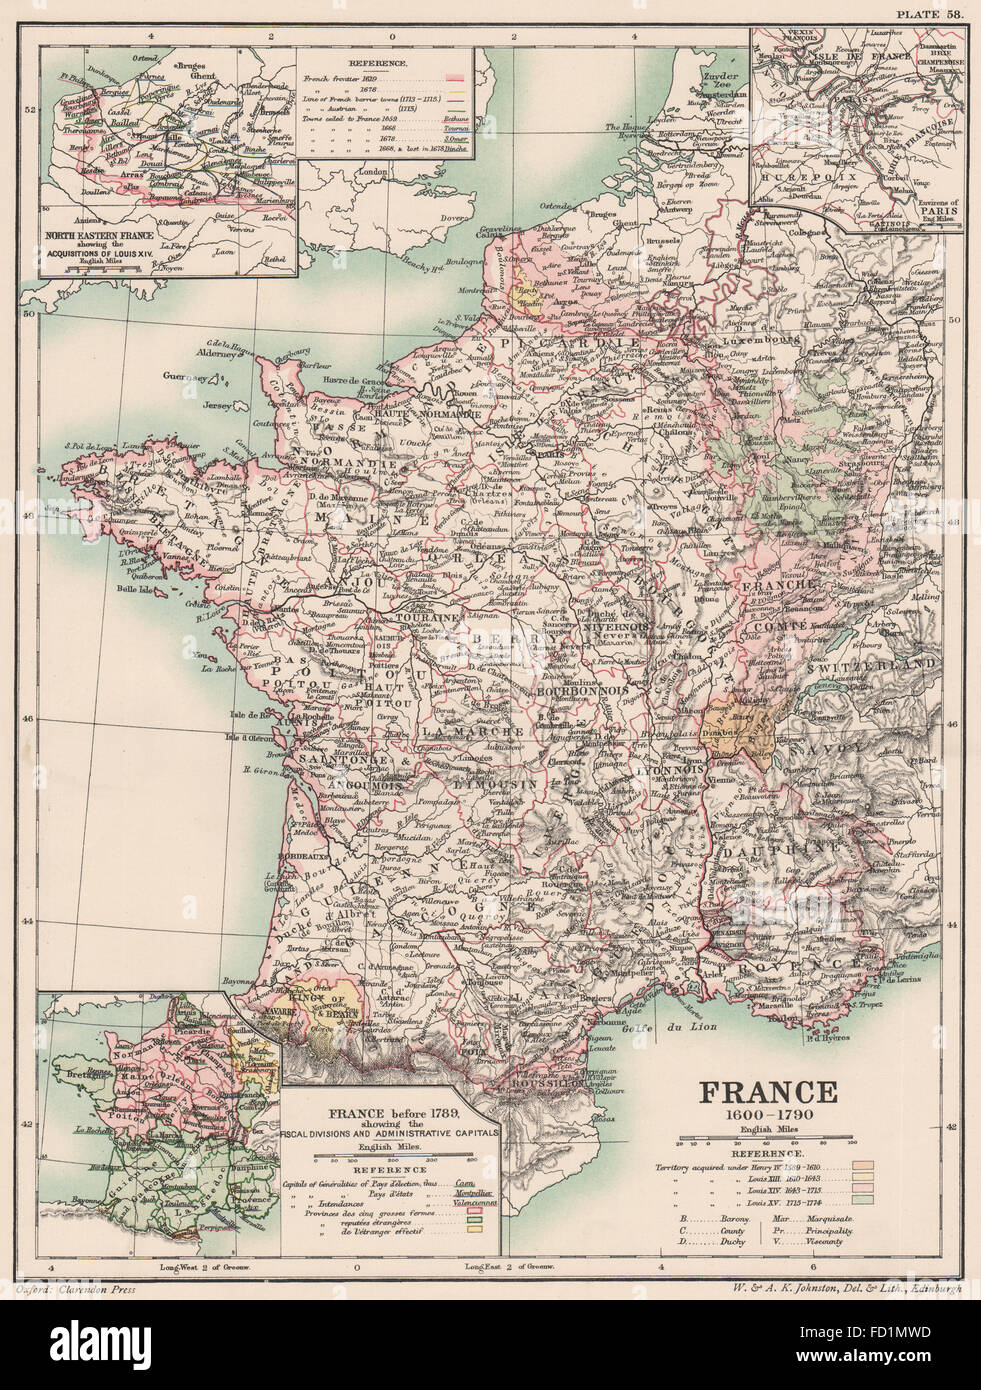 FRANCE 1600-1790: Louis XIV acquisition. < 1789 divisions, 1902 antique map Stock Photo